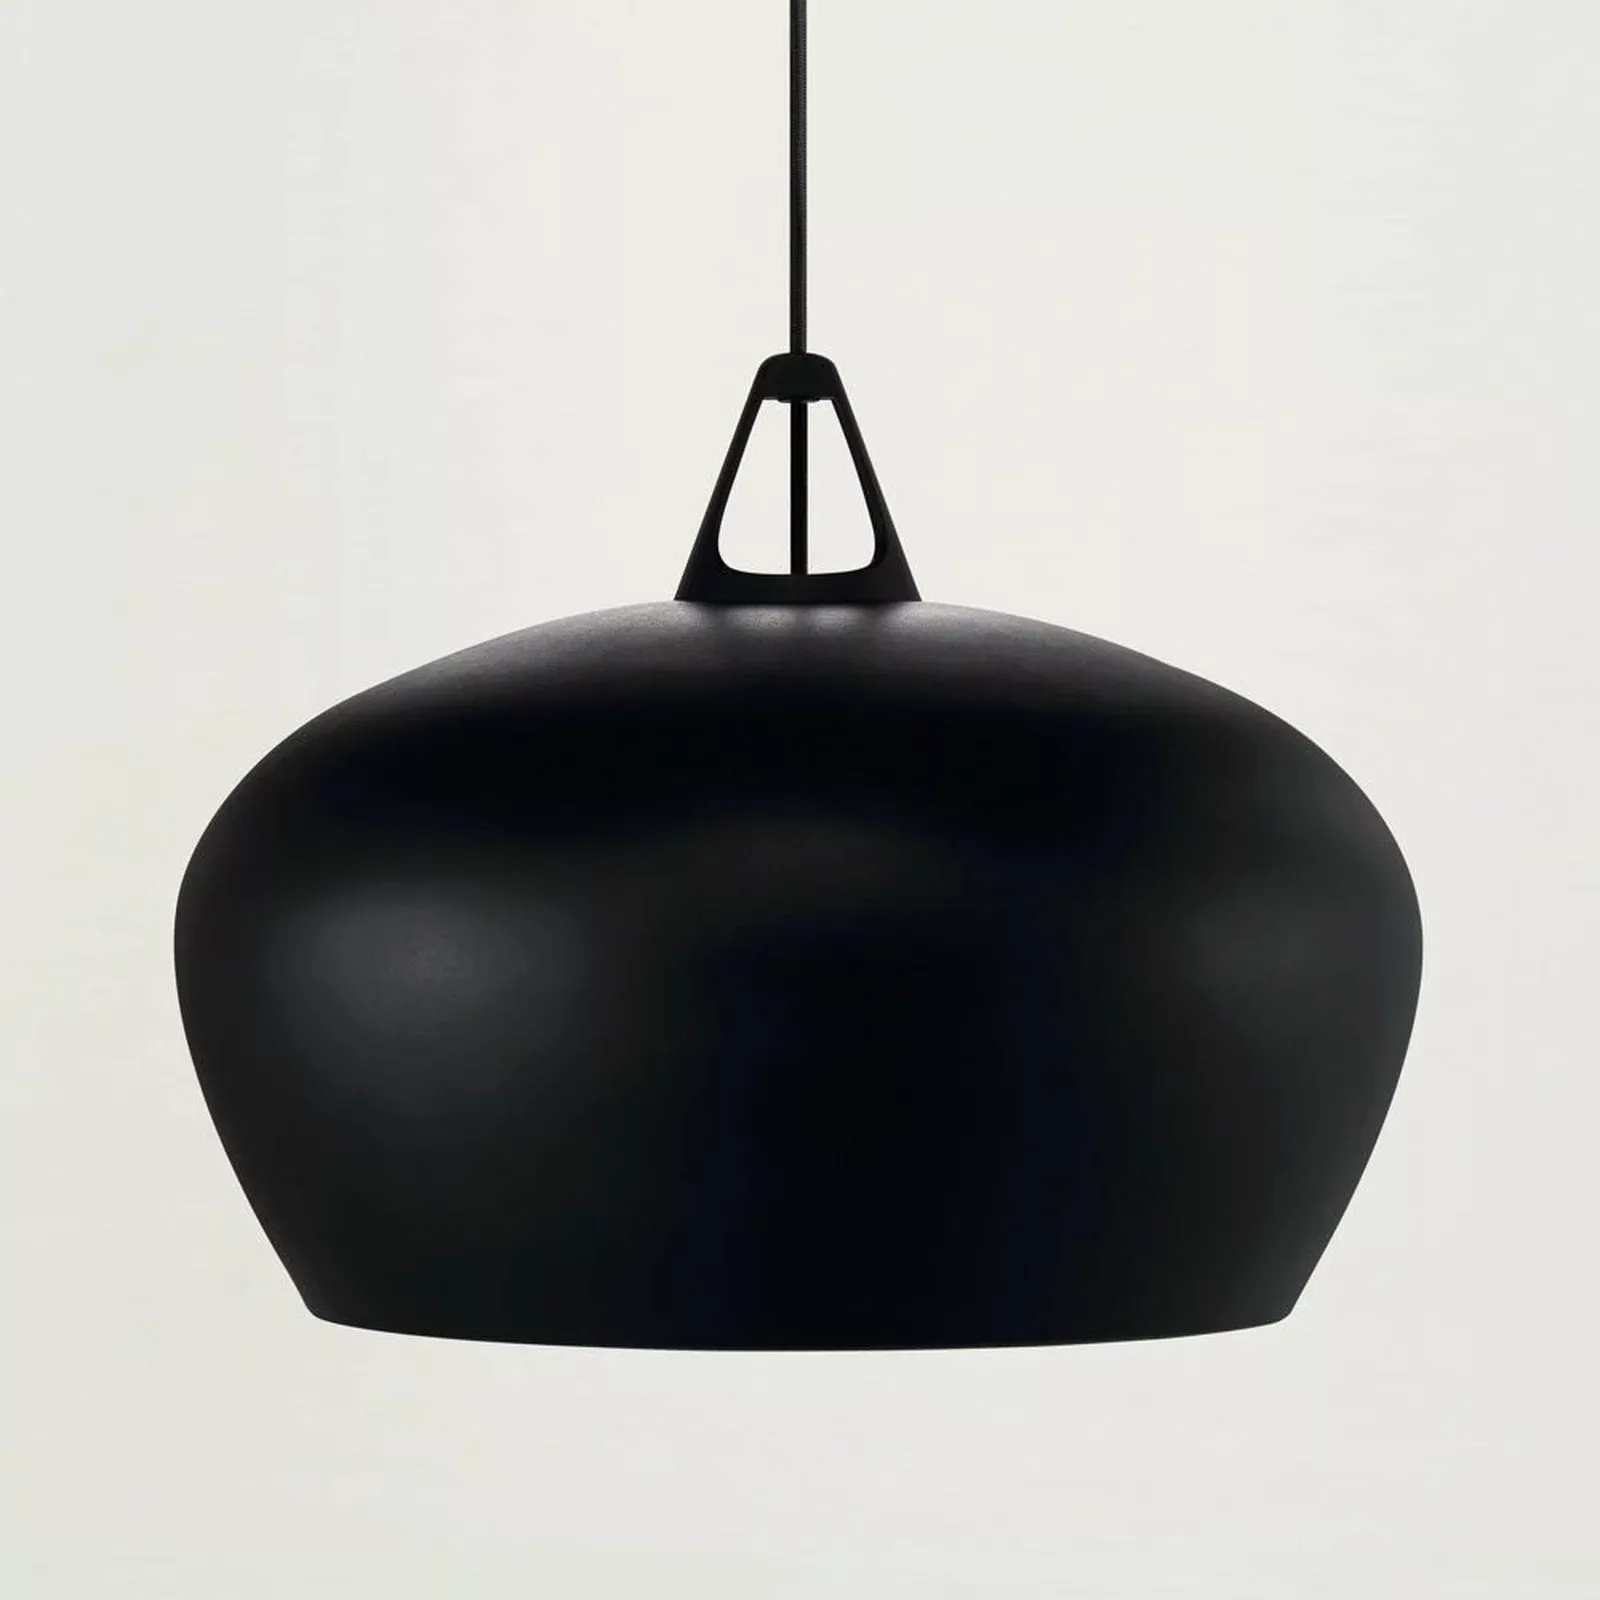 Designer Pendelleuchte Belly, schwarz, E27, 290 mm, by Bonnelycke MDD günstig online kaufen